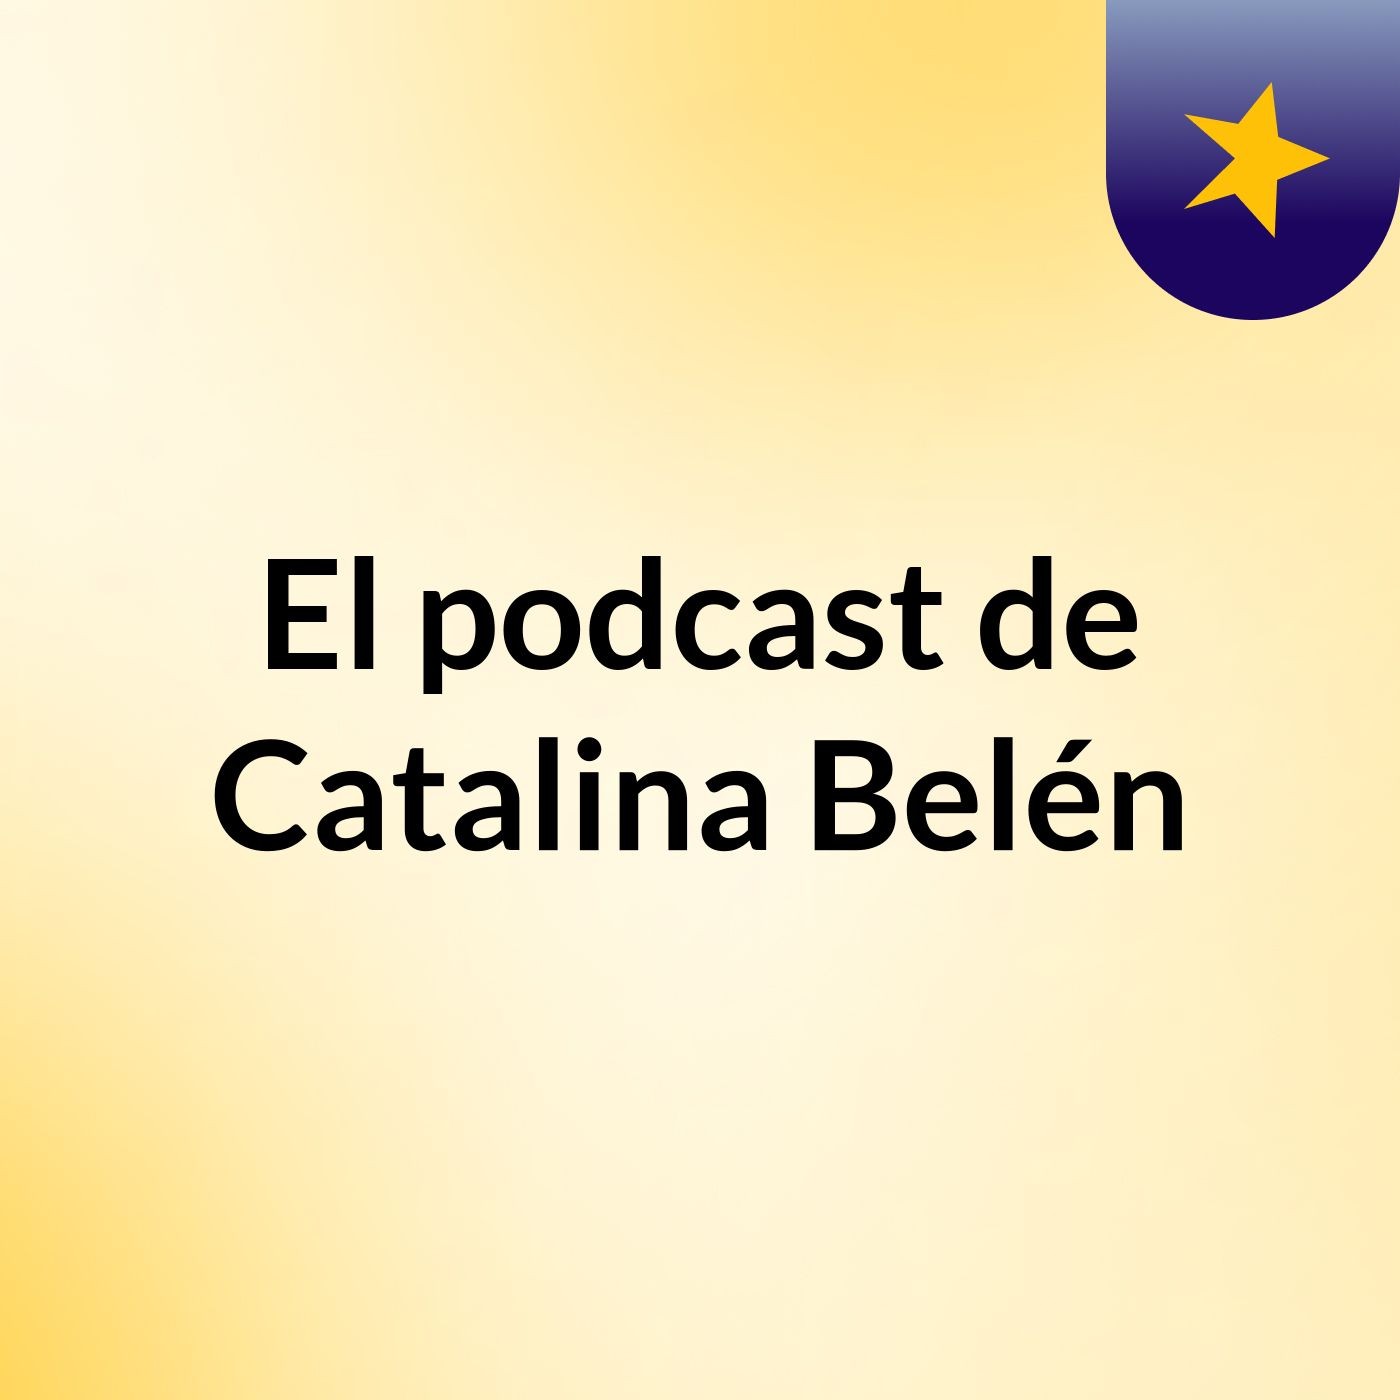 Episodio 19 - El podcast de Catalina Belén